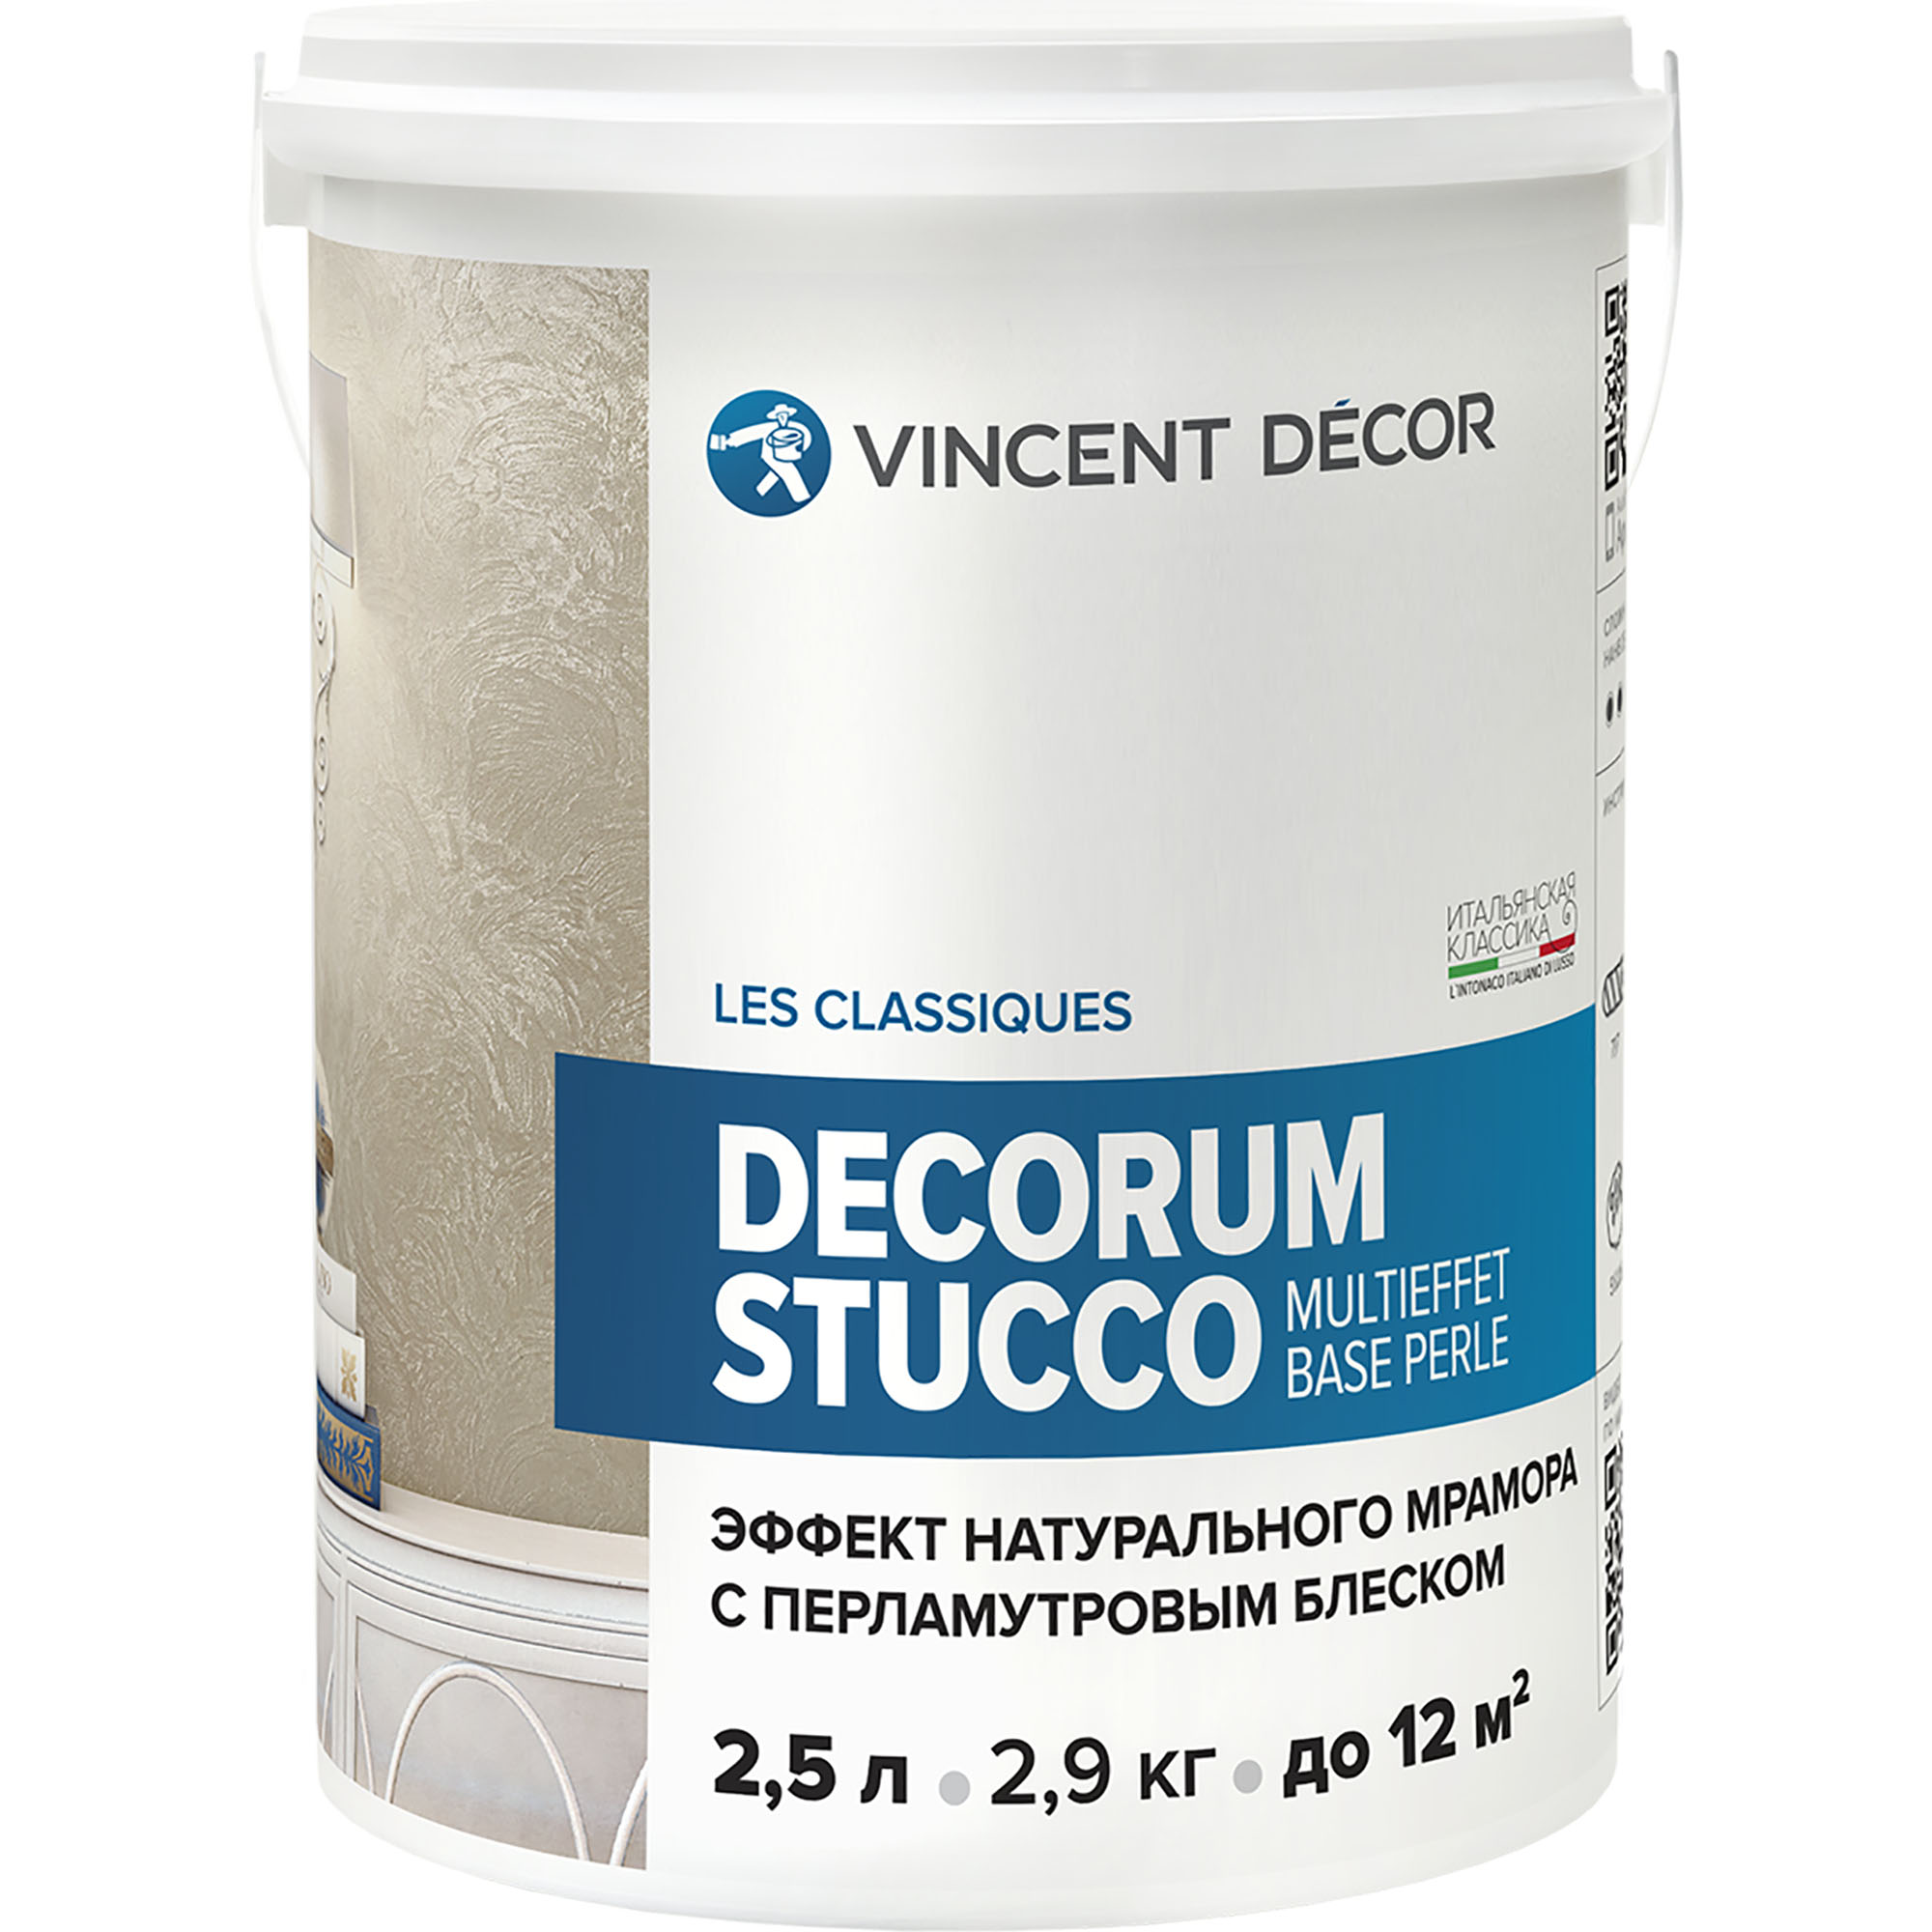 фото Декоративное покрытие для стен vincent decor decorum stucco multieffet base perle c эффектом натурального мрамора с перламутровым блеском 2,5 л